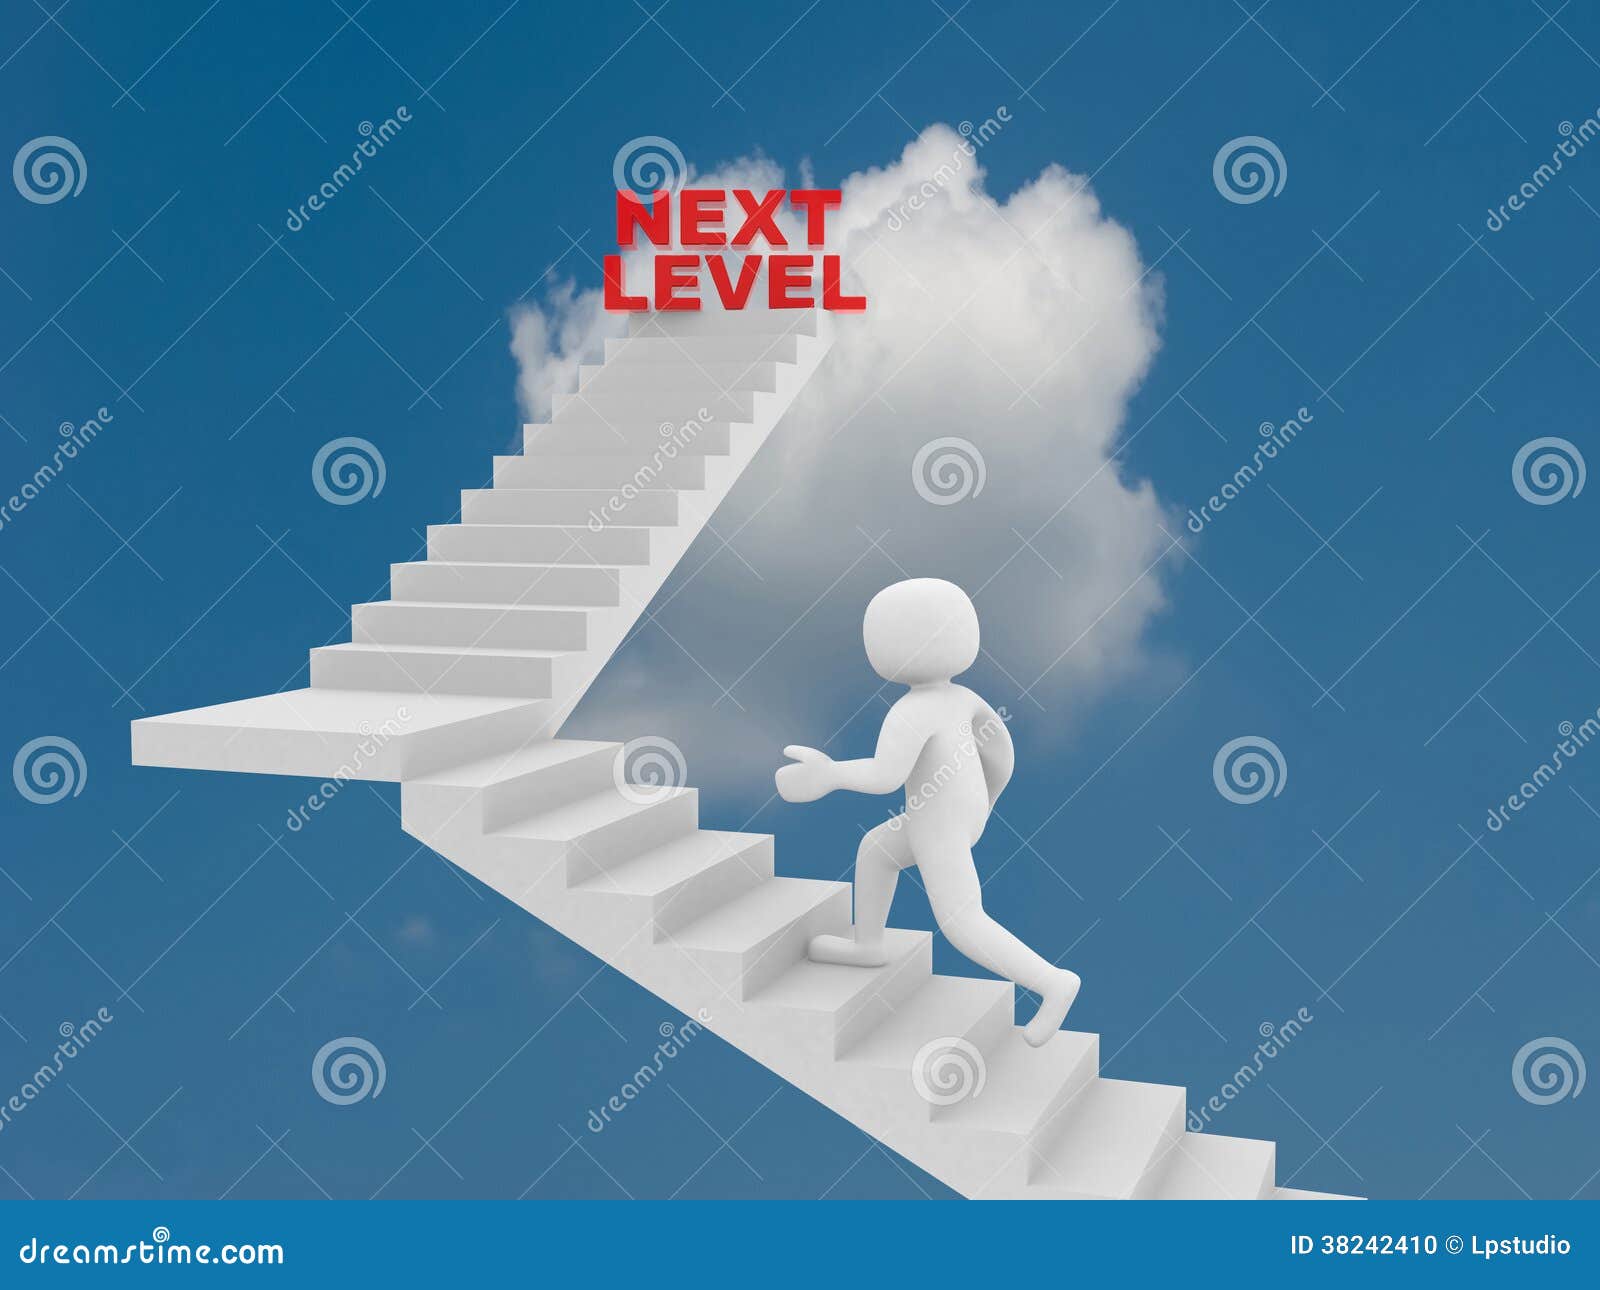 На следующий уровень а также. Следующий уровень. Переход на новый уровень. Следующий уровень картинка. 3d человек на лестнице.